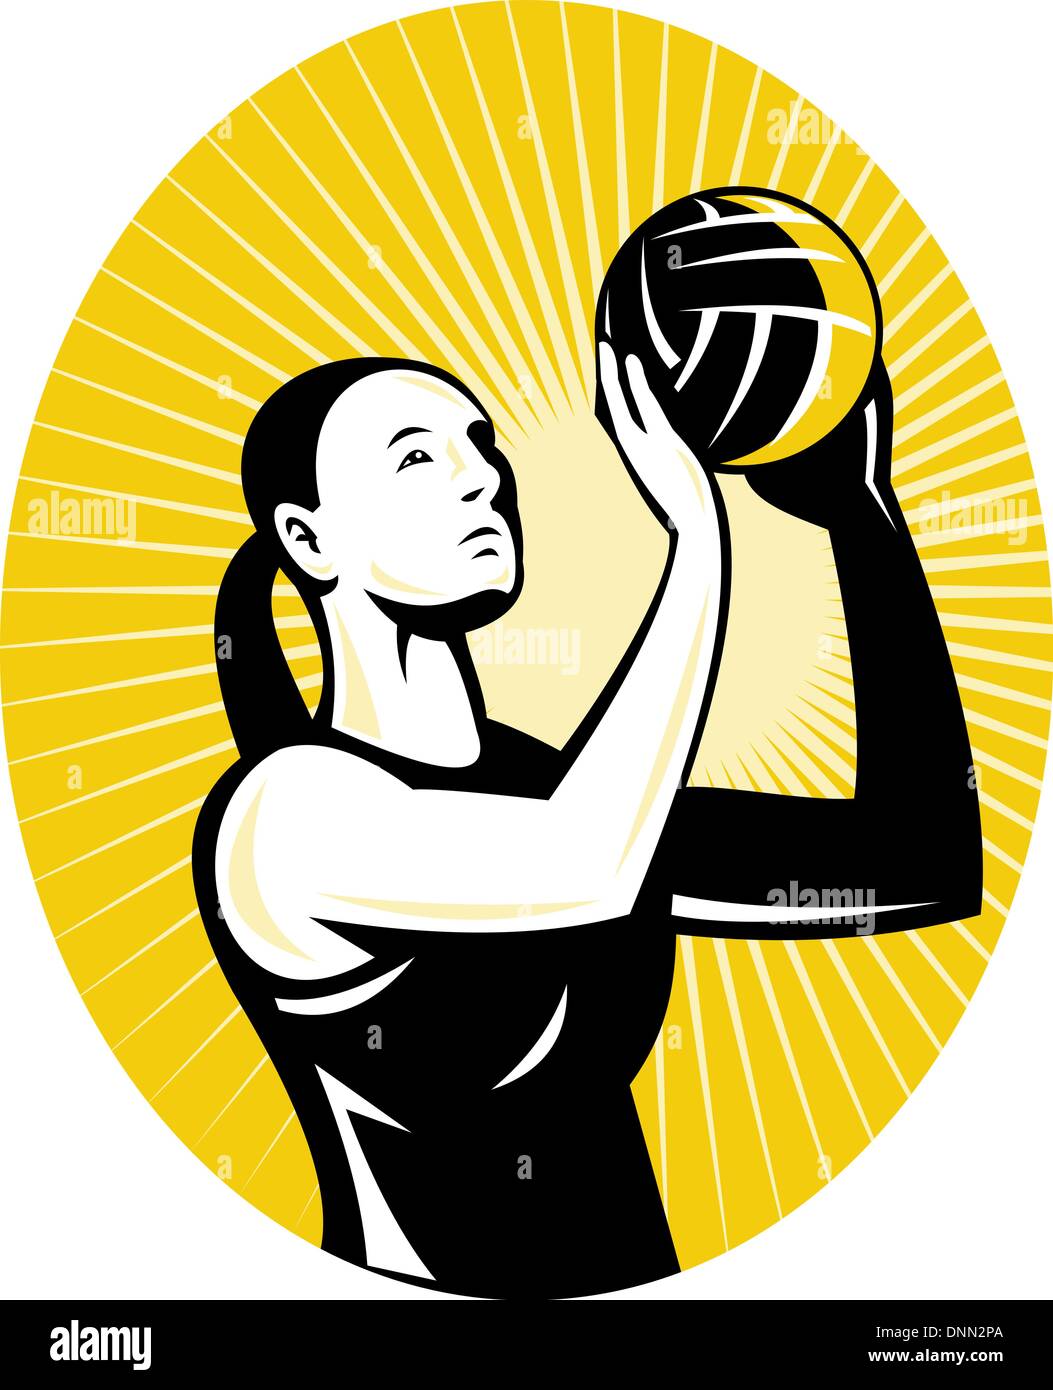 Illustrazione di un netball player sparatutto obiettivo le riprese delle sfere in background ovale fatto in stile retrò Illustrazione Vettoriale